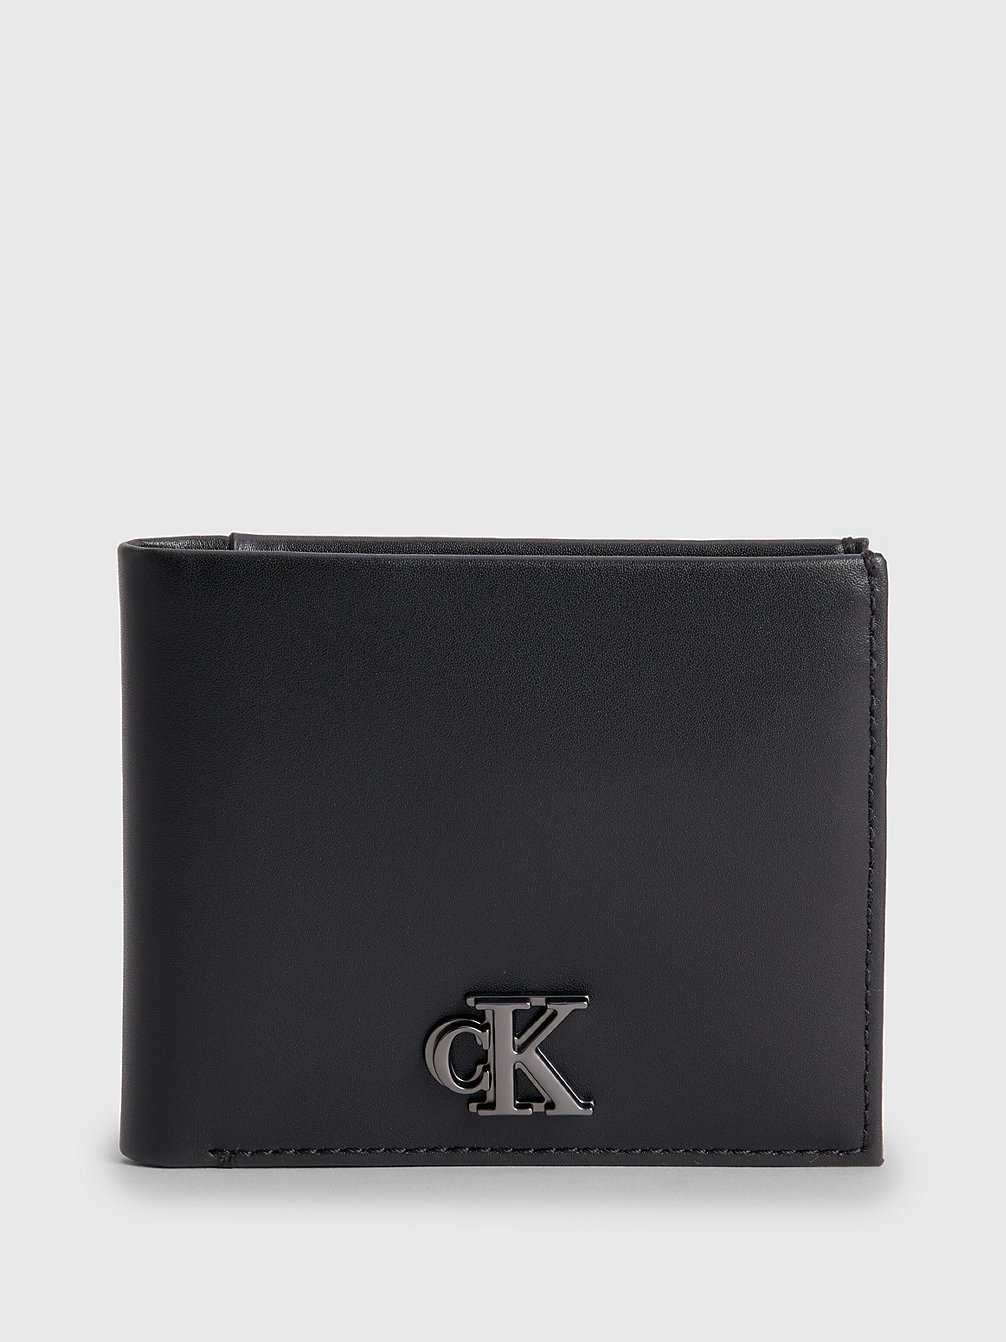 BLACK Leather Rfid Billfold Wallet undefined men Calvin Klein